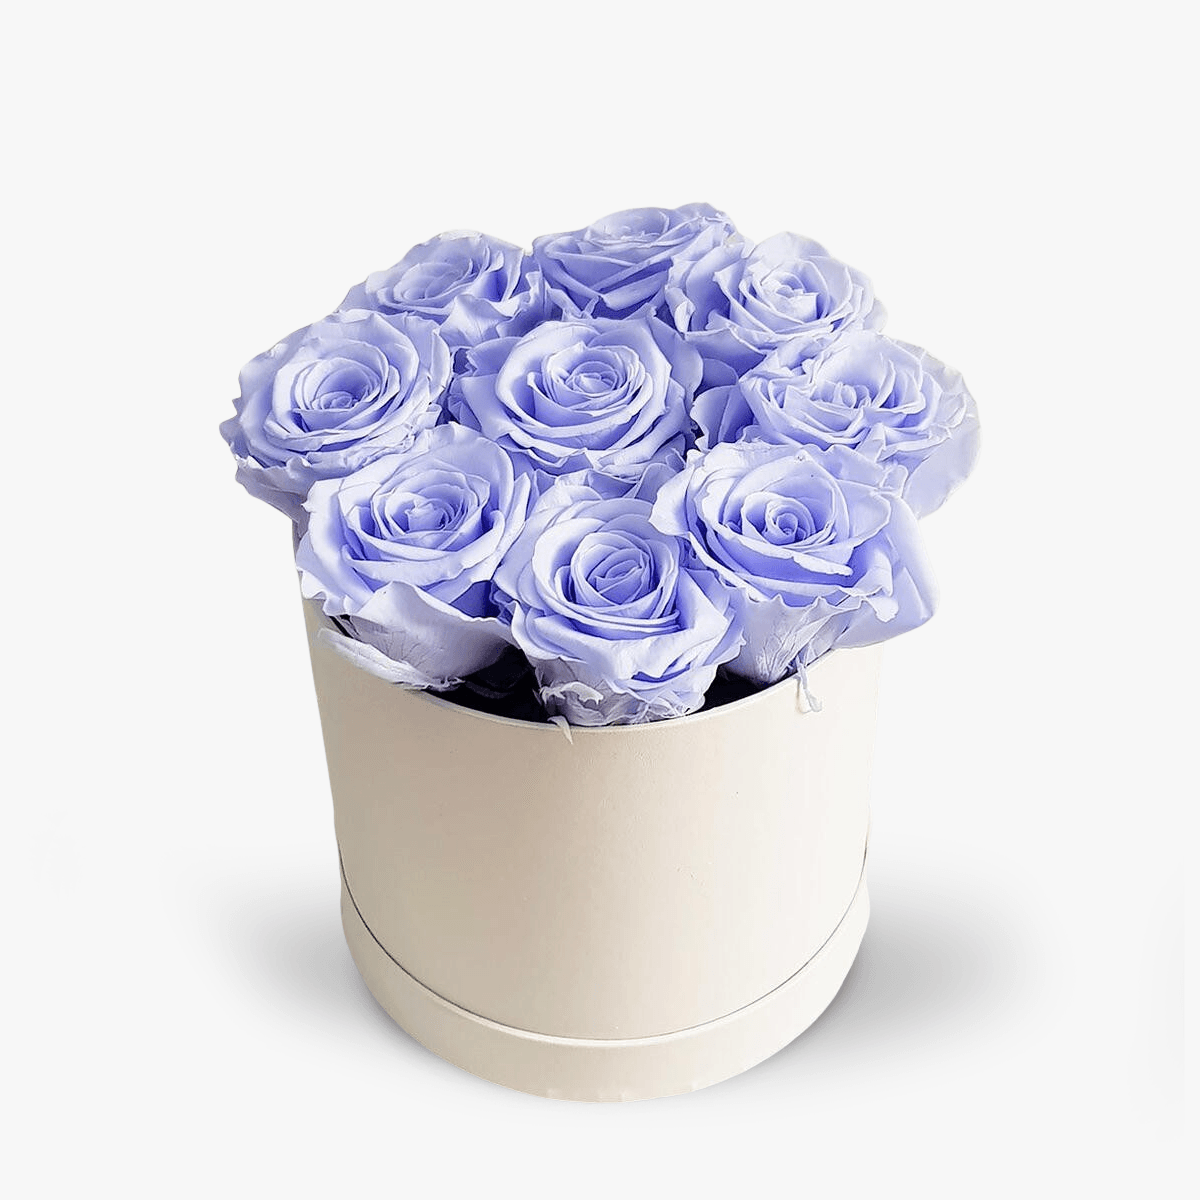 Cutie cu 9 trandafiri lavanda, criogenati – Standard criogenati imagine 2022